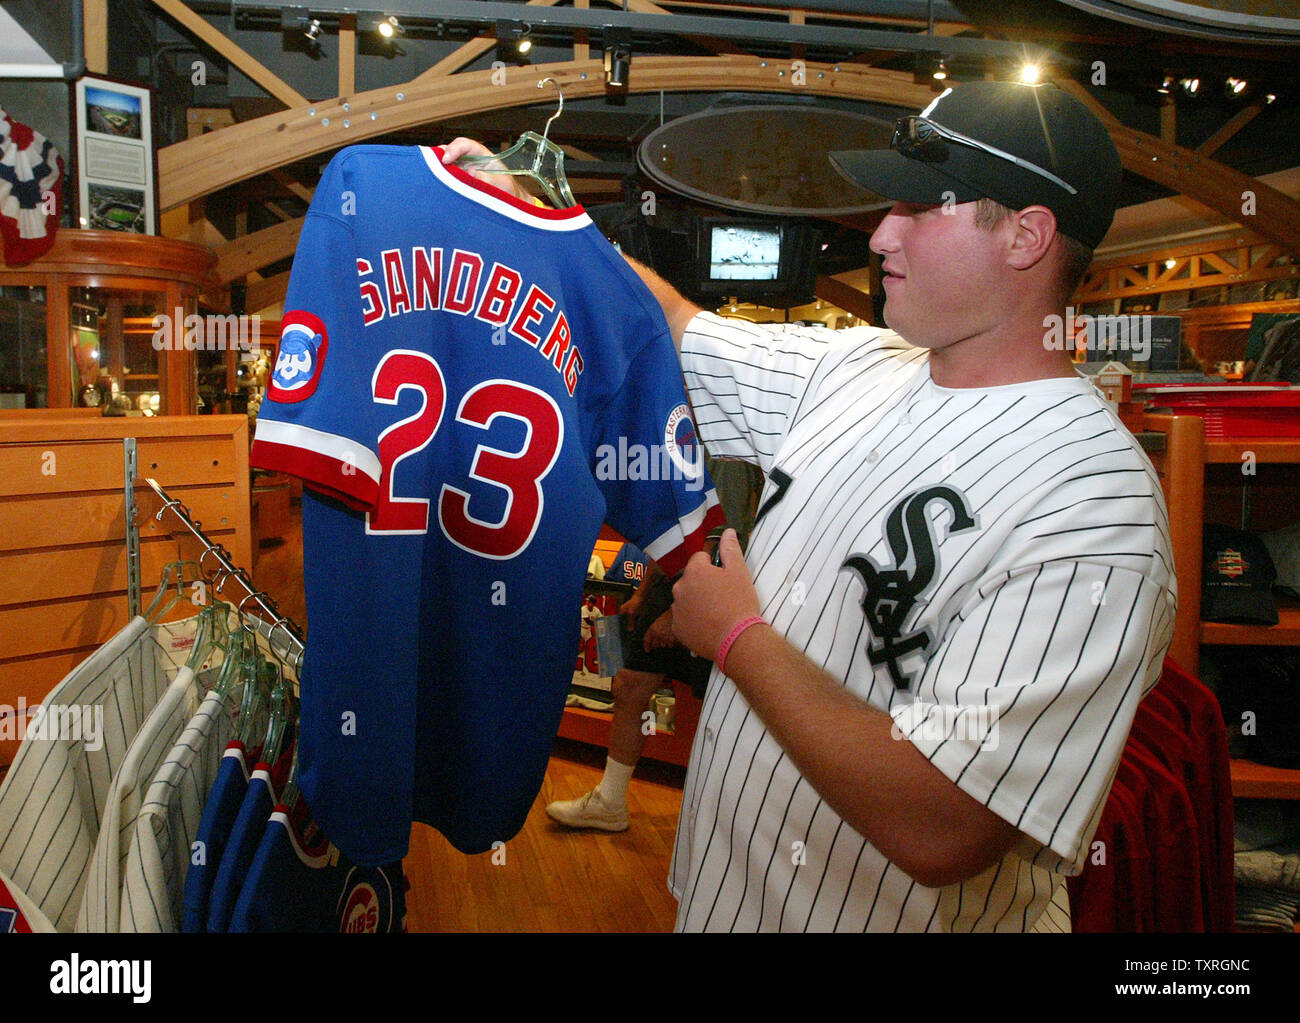 Die hard Chicago White Sox fan Jon Lidstrom from Chicago checks